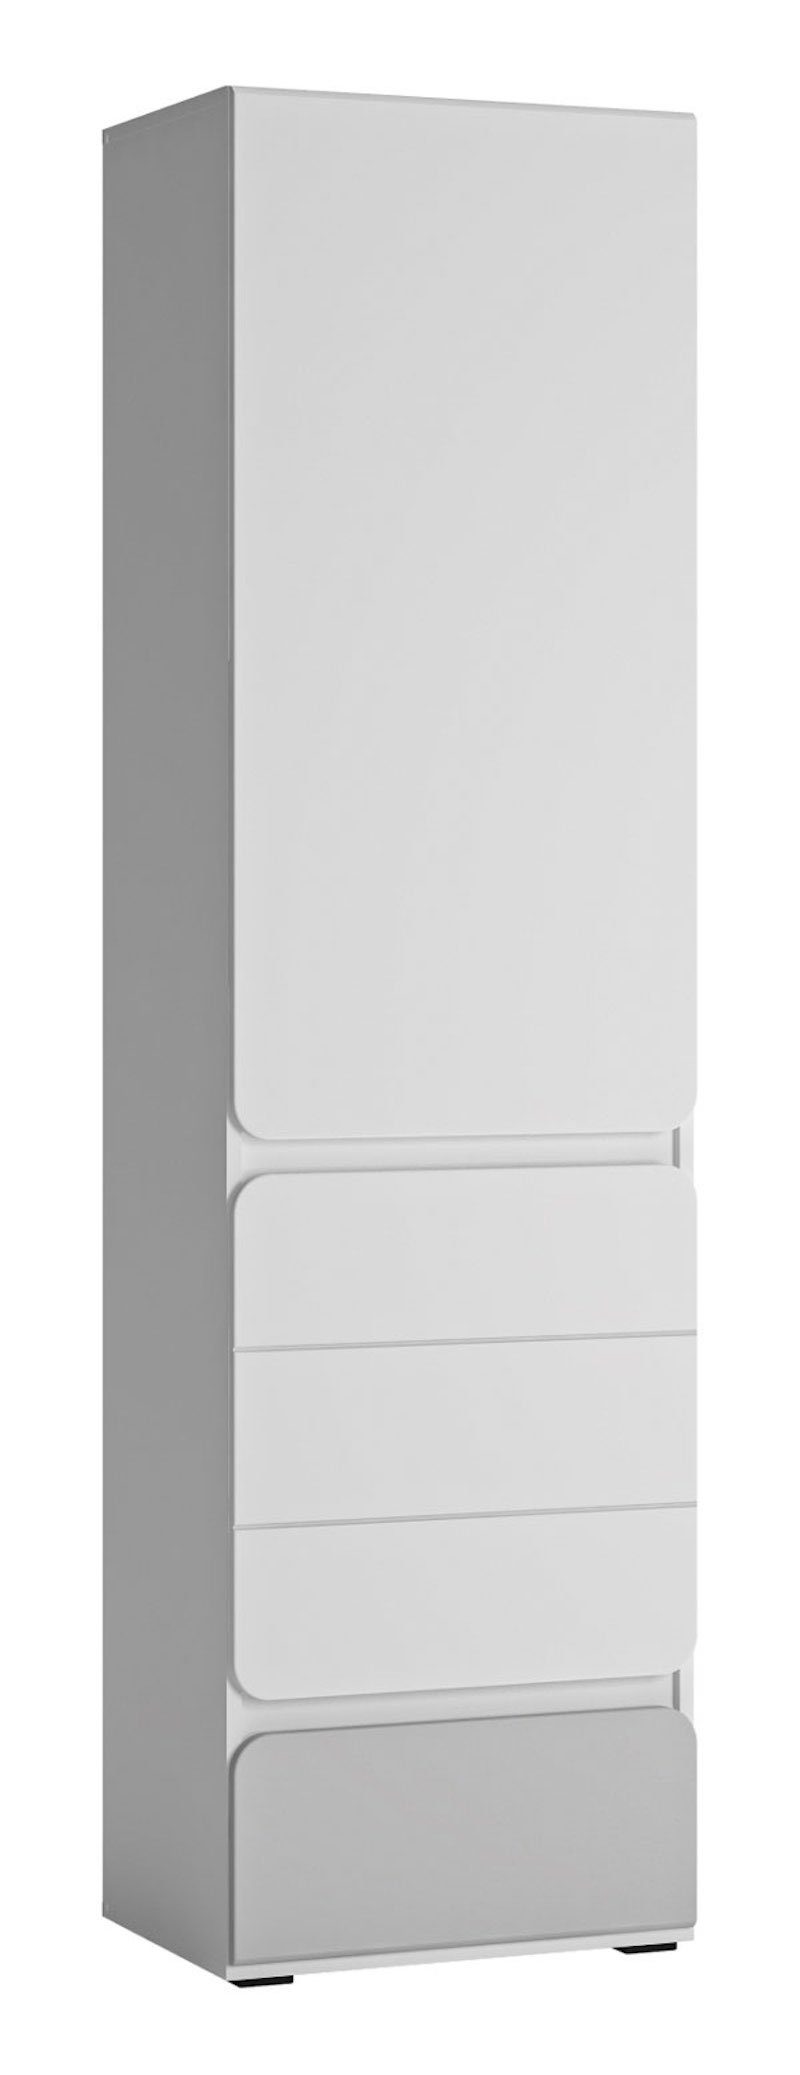 Feldmann-Wohnen Stauraumschrank Albi (Albi, Kleiderschrank) 52x41x193cm weiß grau Hochglanz